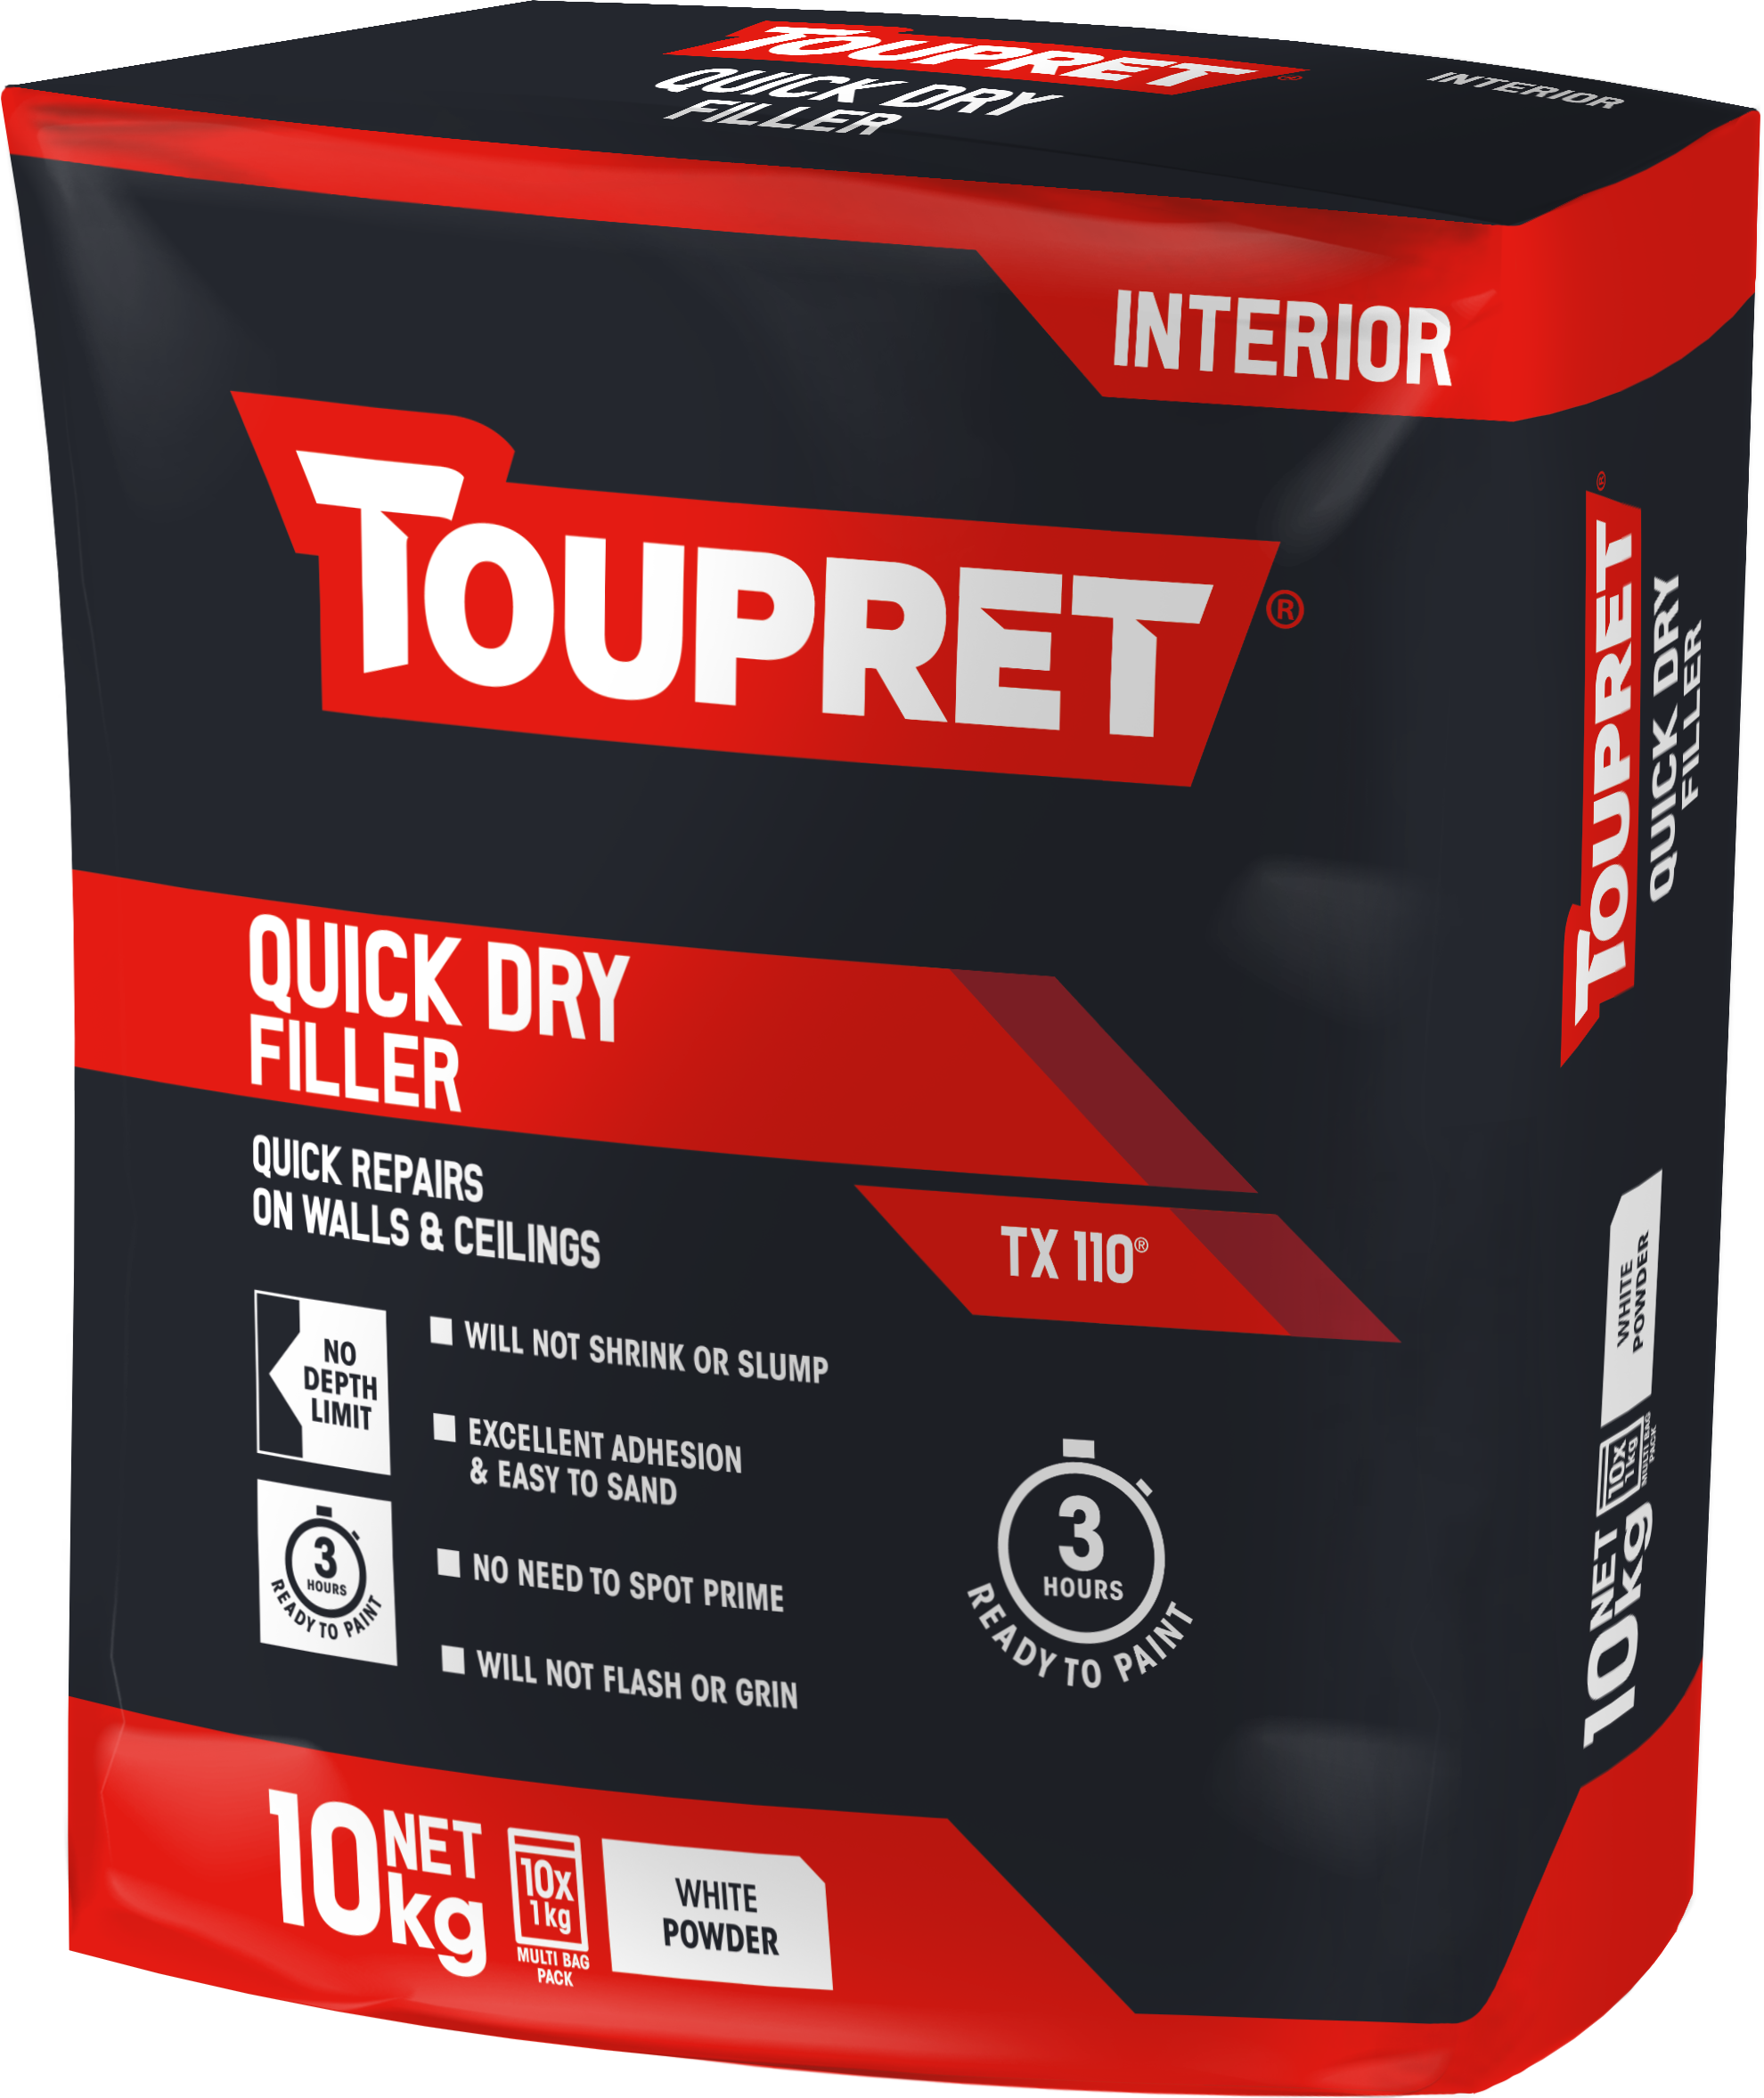 Toupret Quick Dry Filler (TX 110) 10x 1kg bag in bag